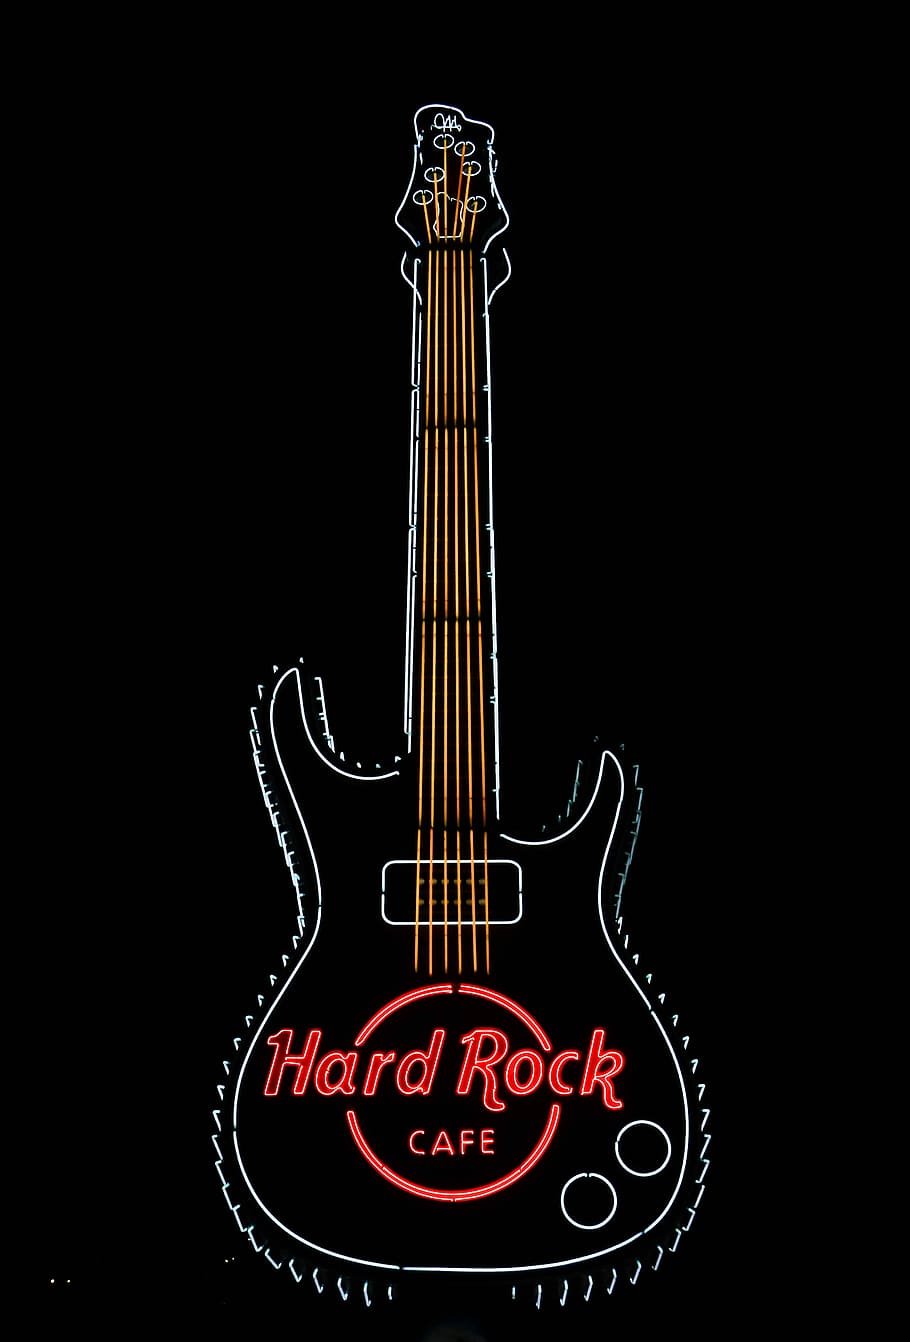 Details more than 155 hard rock hd wallpaper - 3tdesign.edu.vn